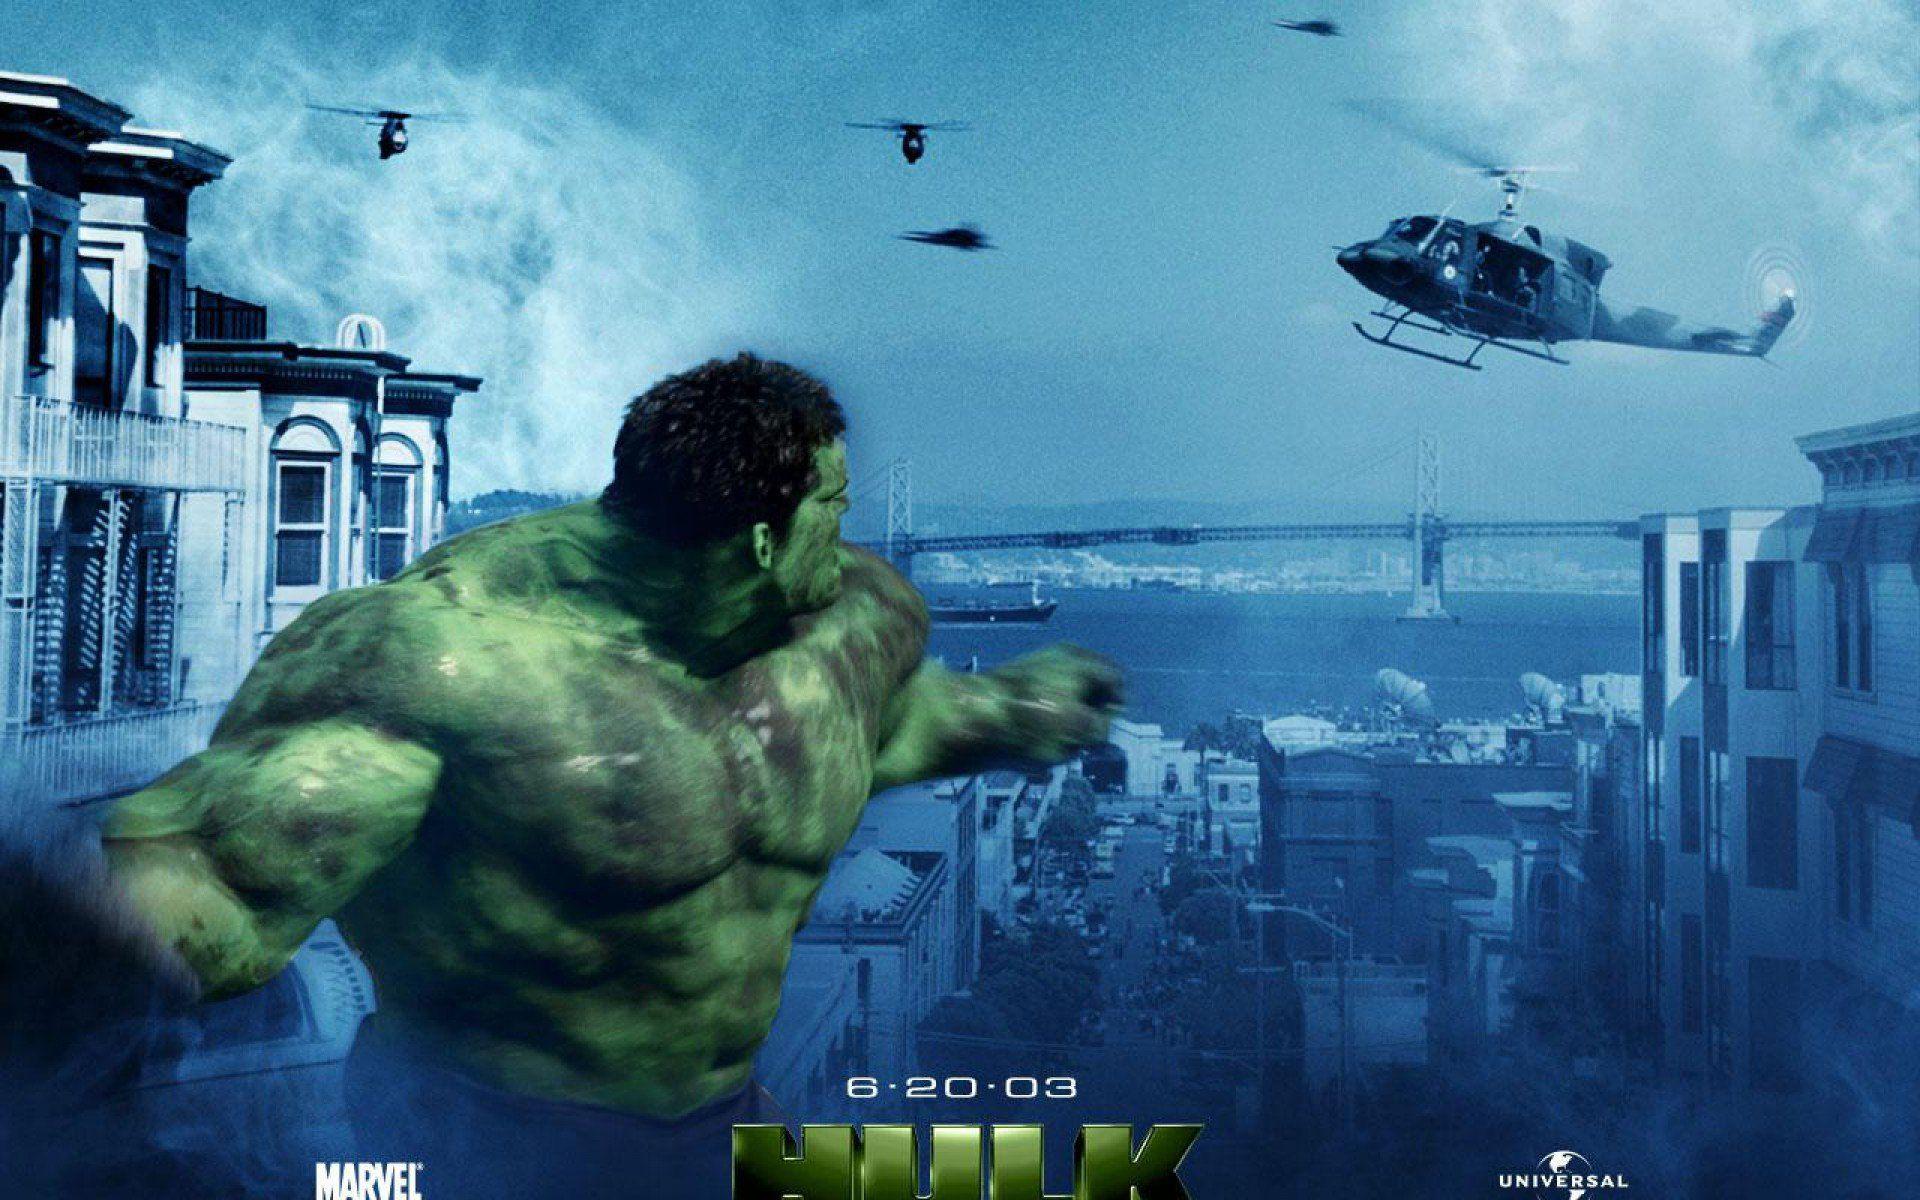 hulk 2003 wallpaper, The Incredible Hulk